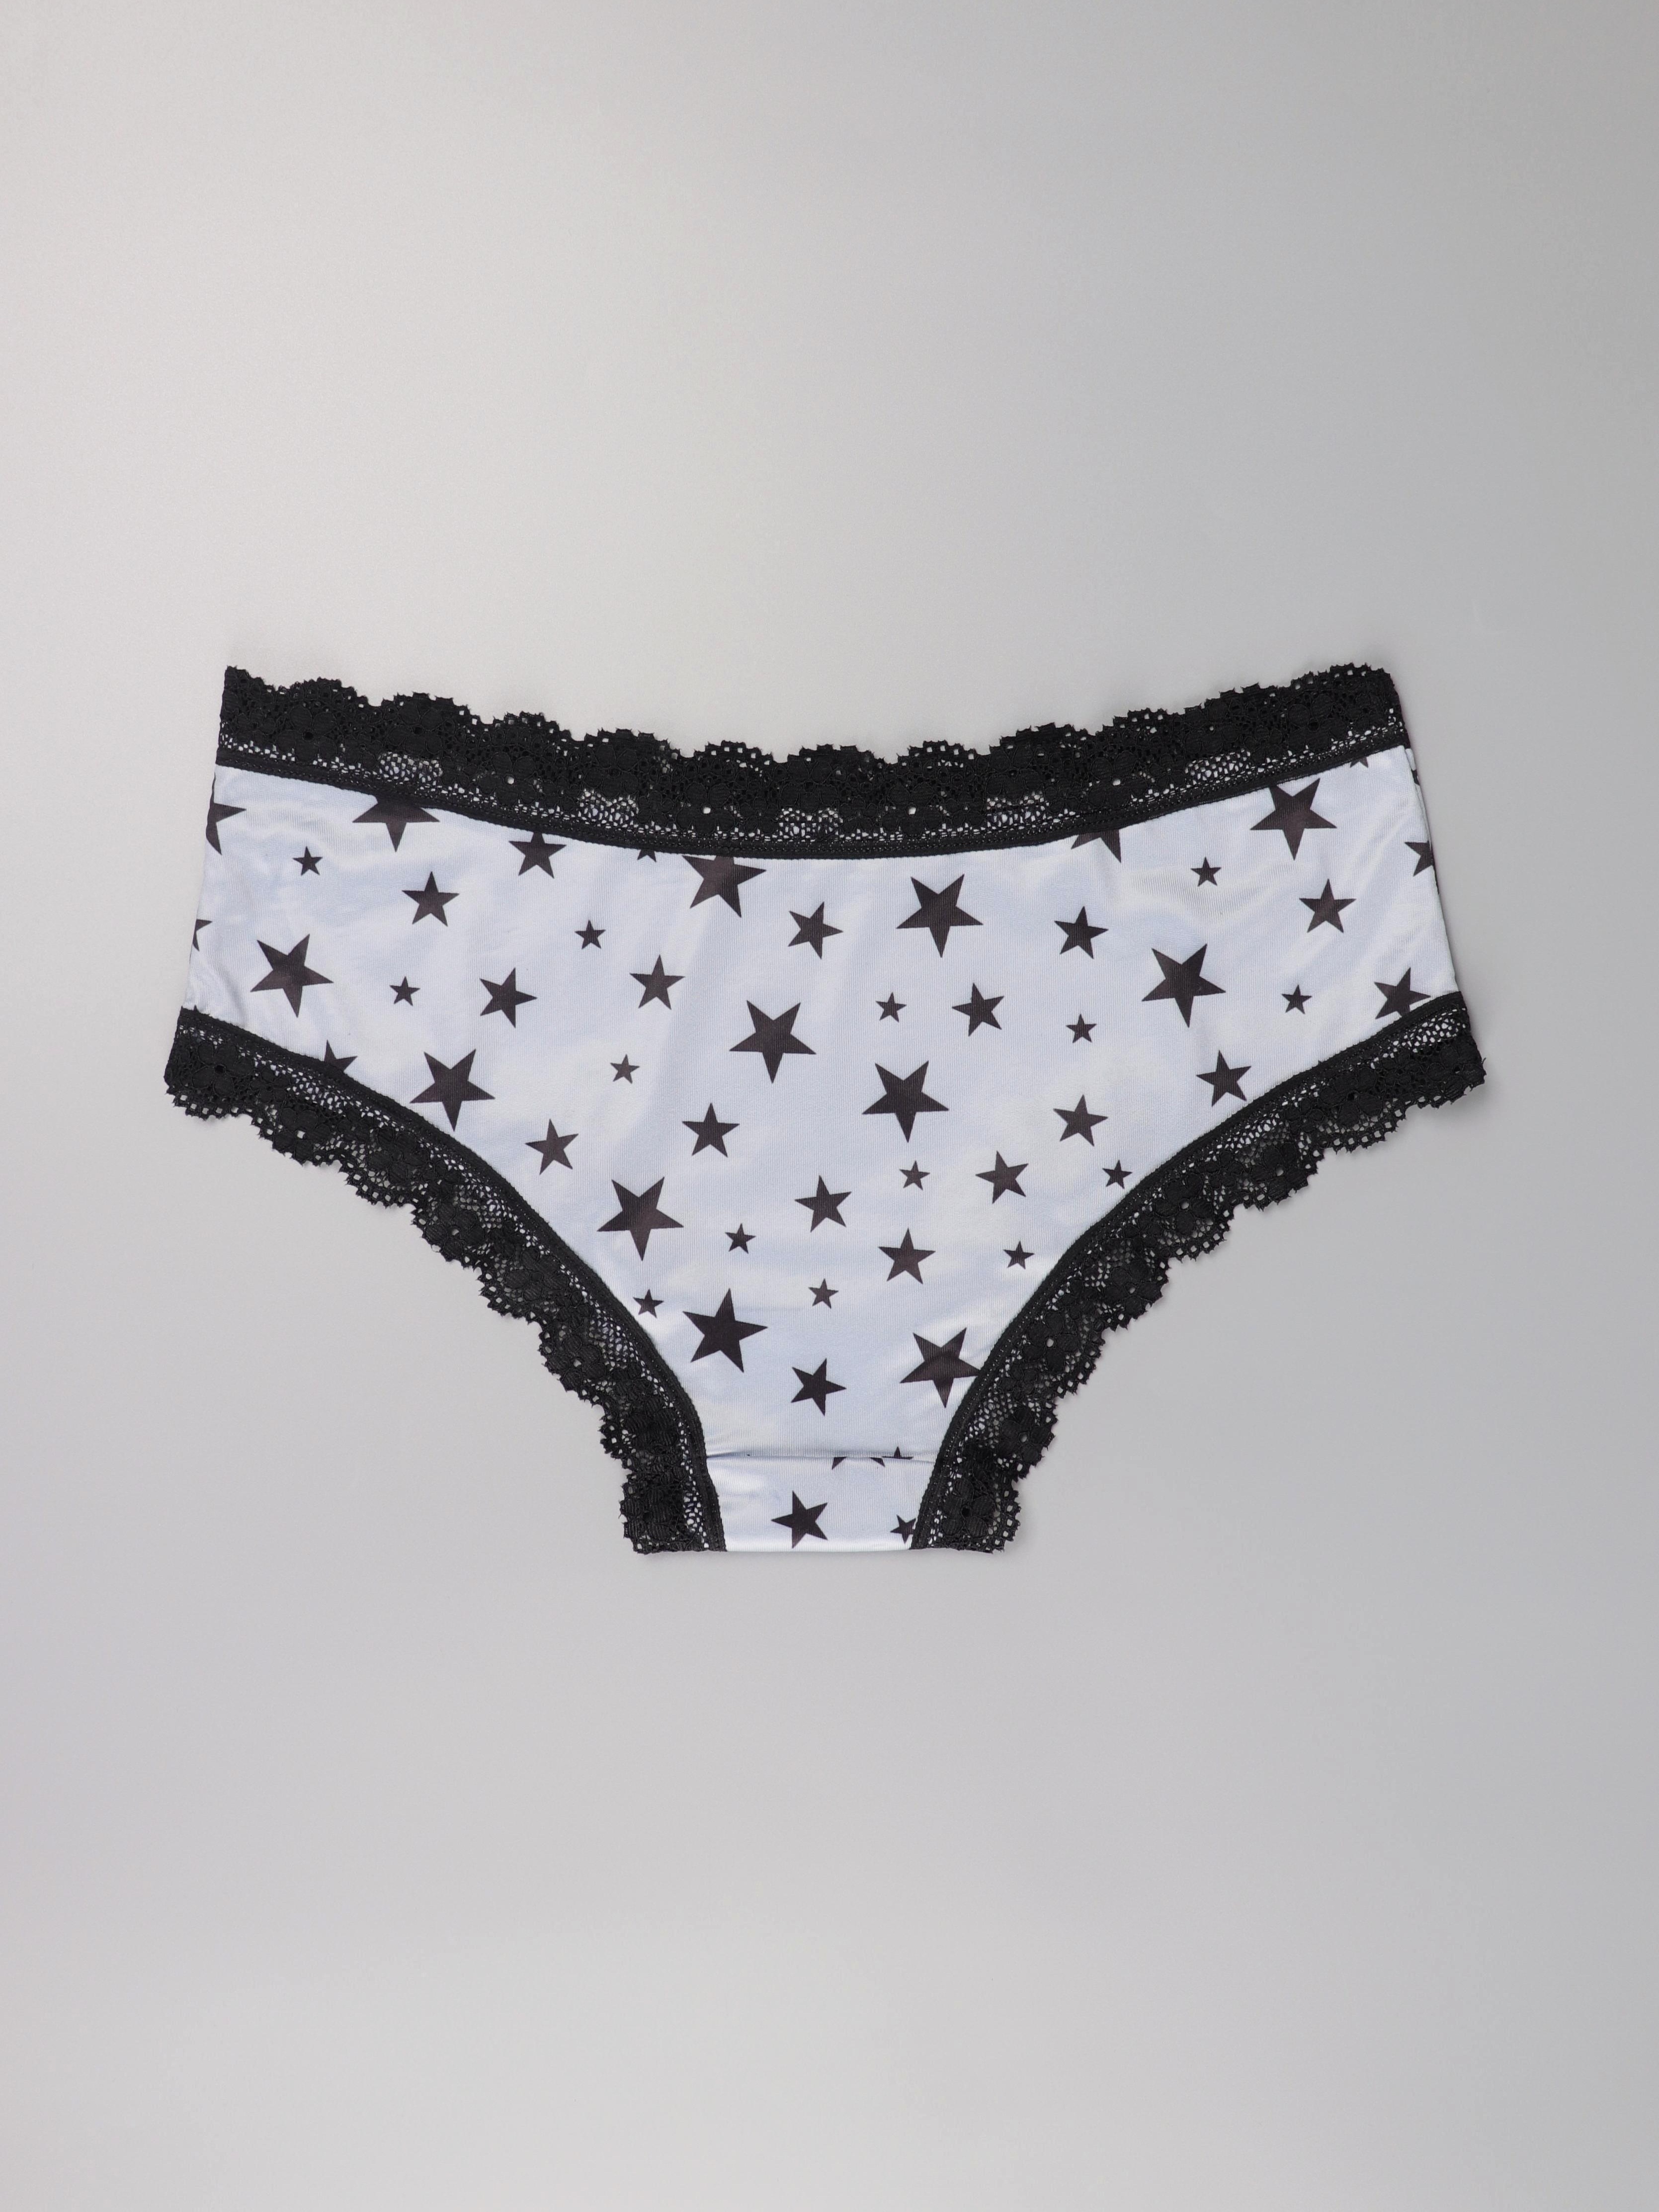 89105 LeafMeiry Underwear Women Dot Print Cute Women Panties Sexy